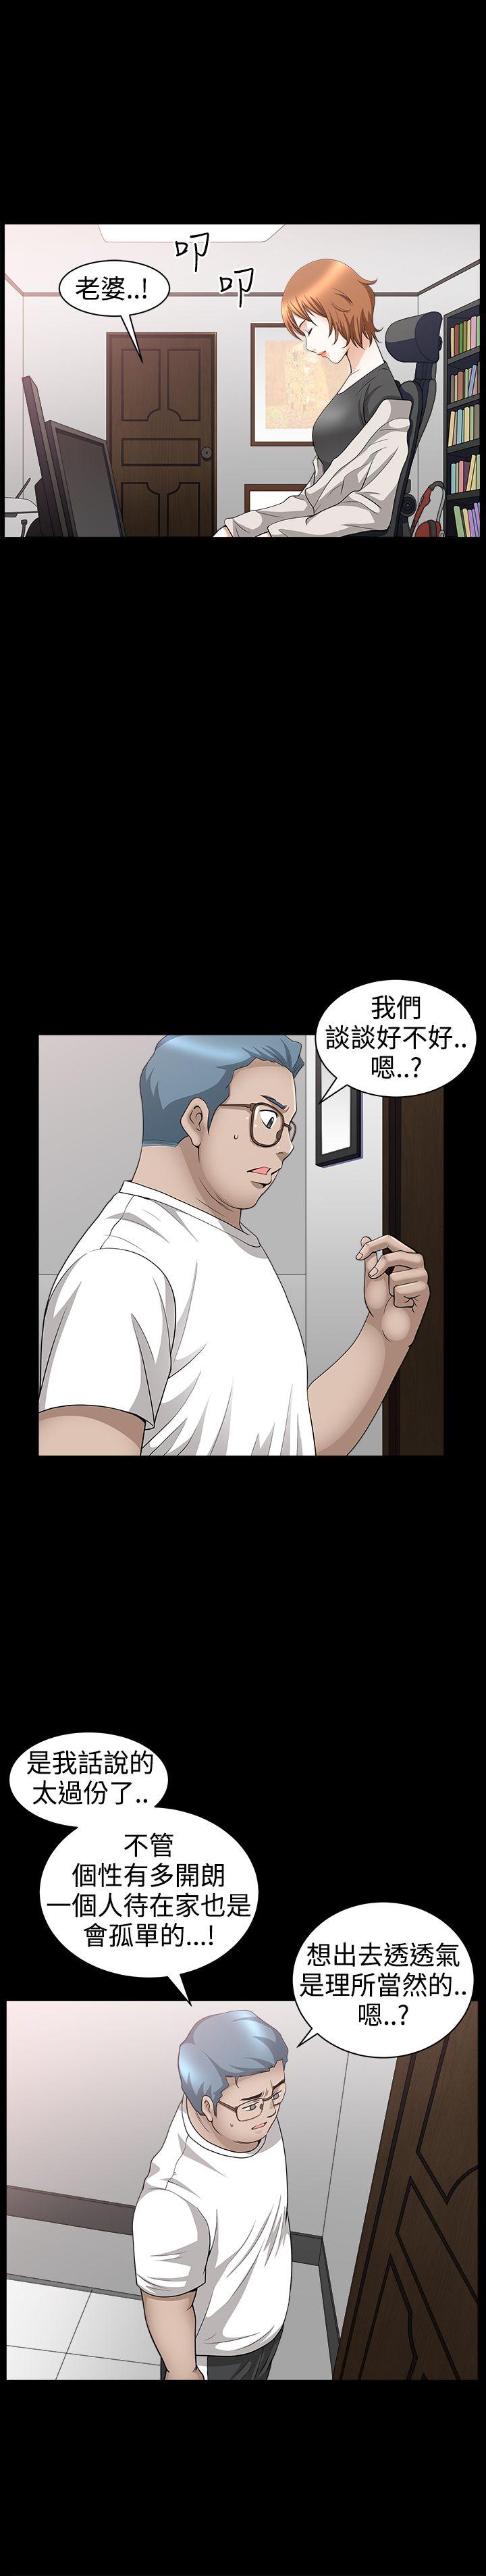 韩国污漫画 人妻性解放3:粗糙的手 第35话 9